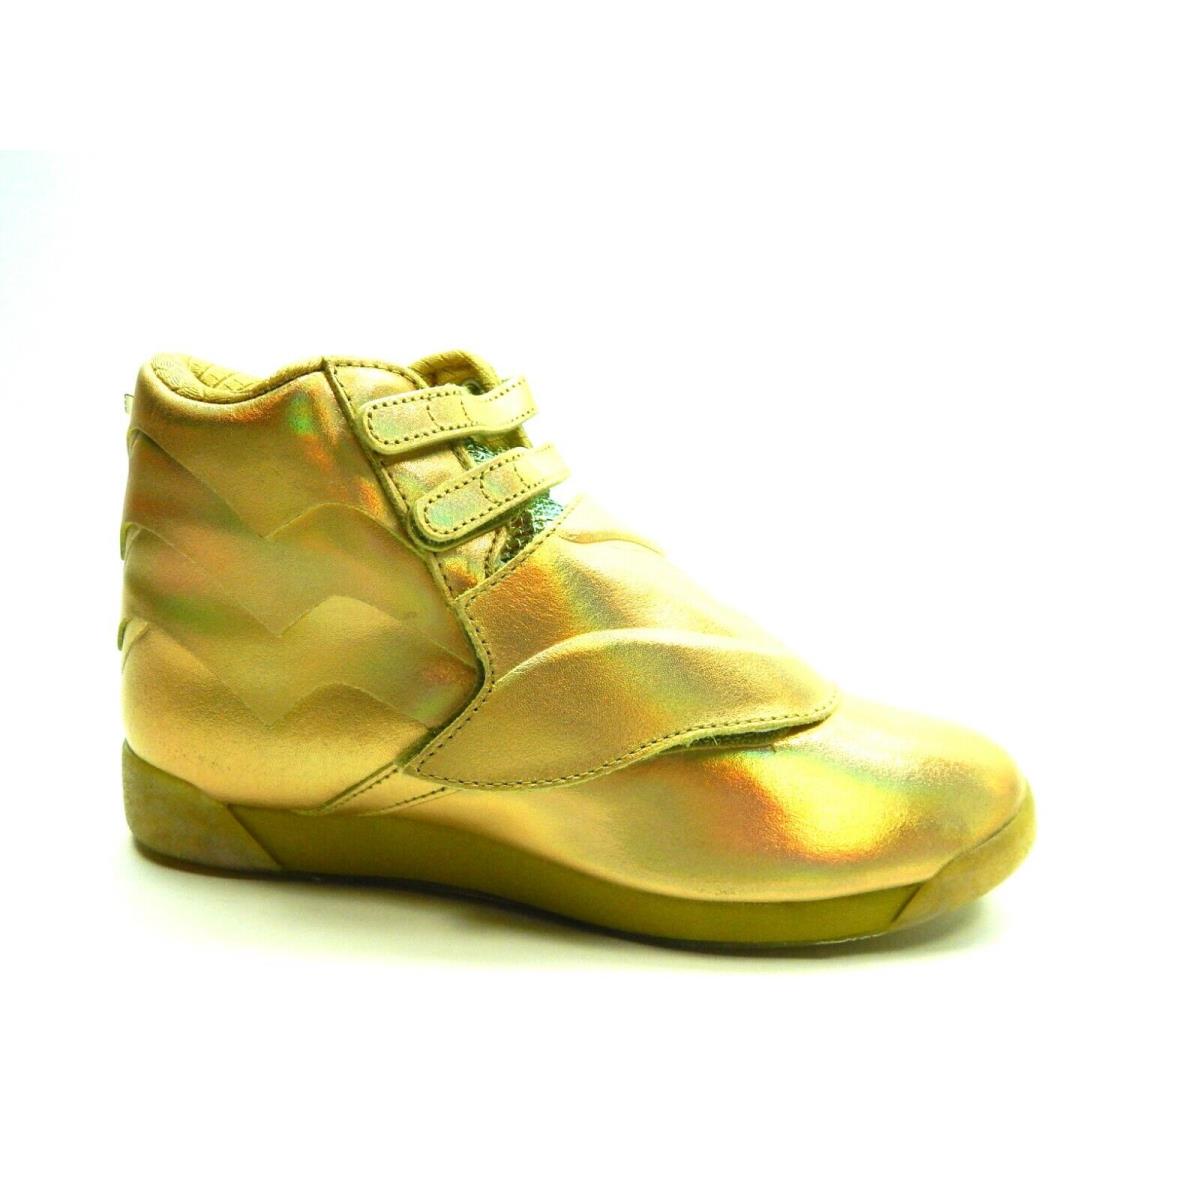 Reebok Training F/s HI MU Gold FW4667 Women Shoes Size 7.5